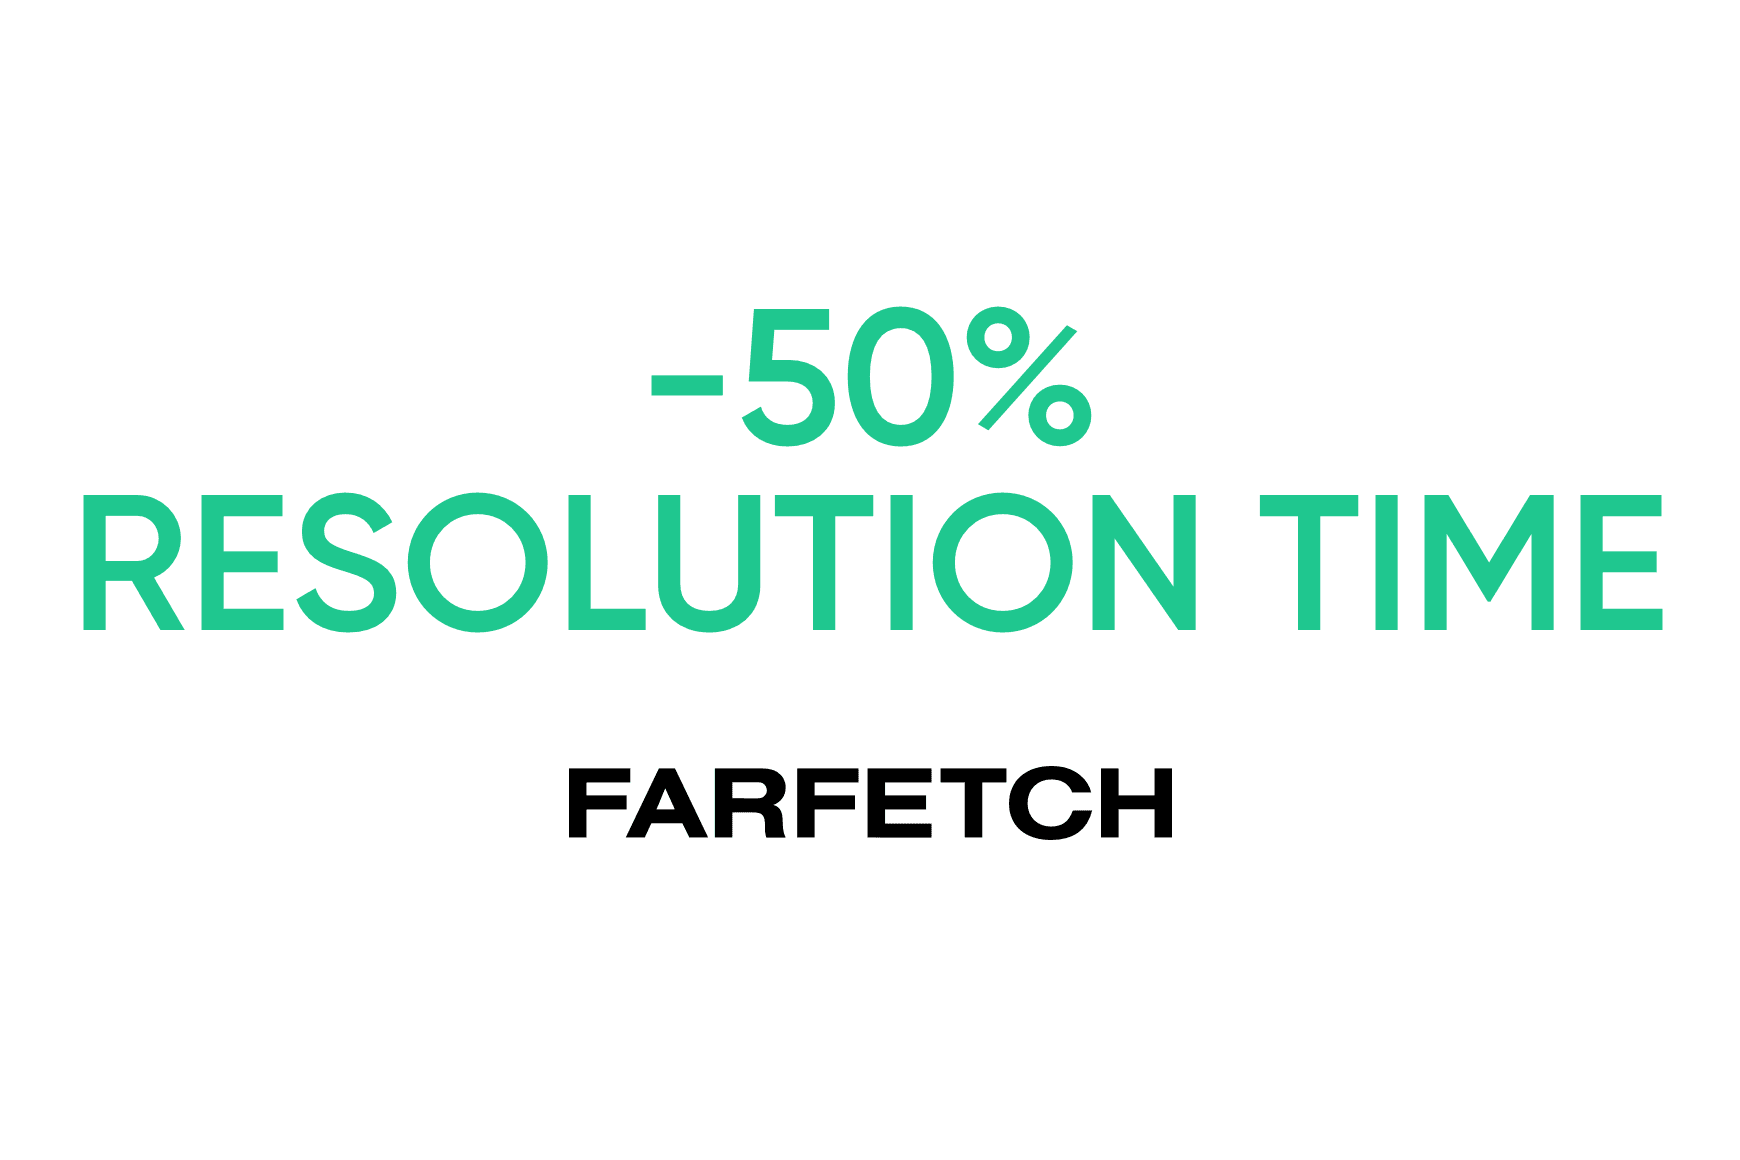 Farfetch: riduzione dei tempi di gestione/risoluzione di oltre il 50%